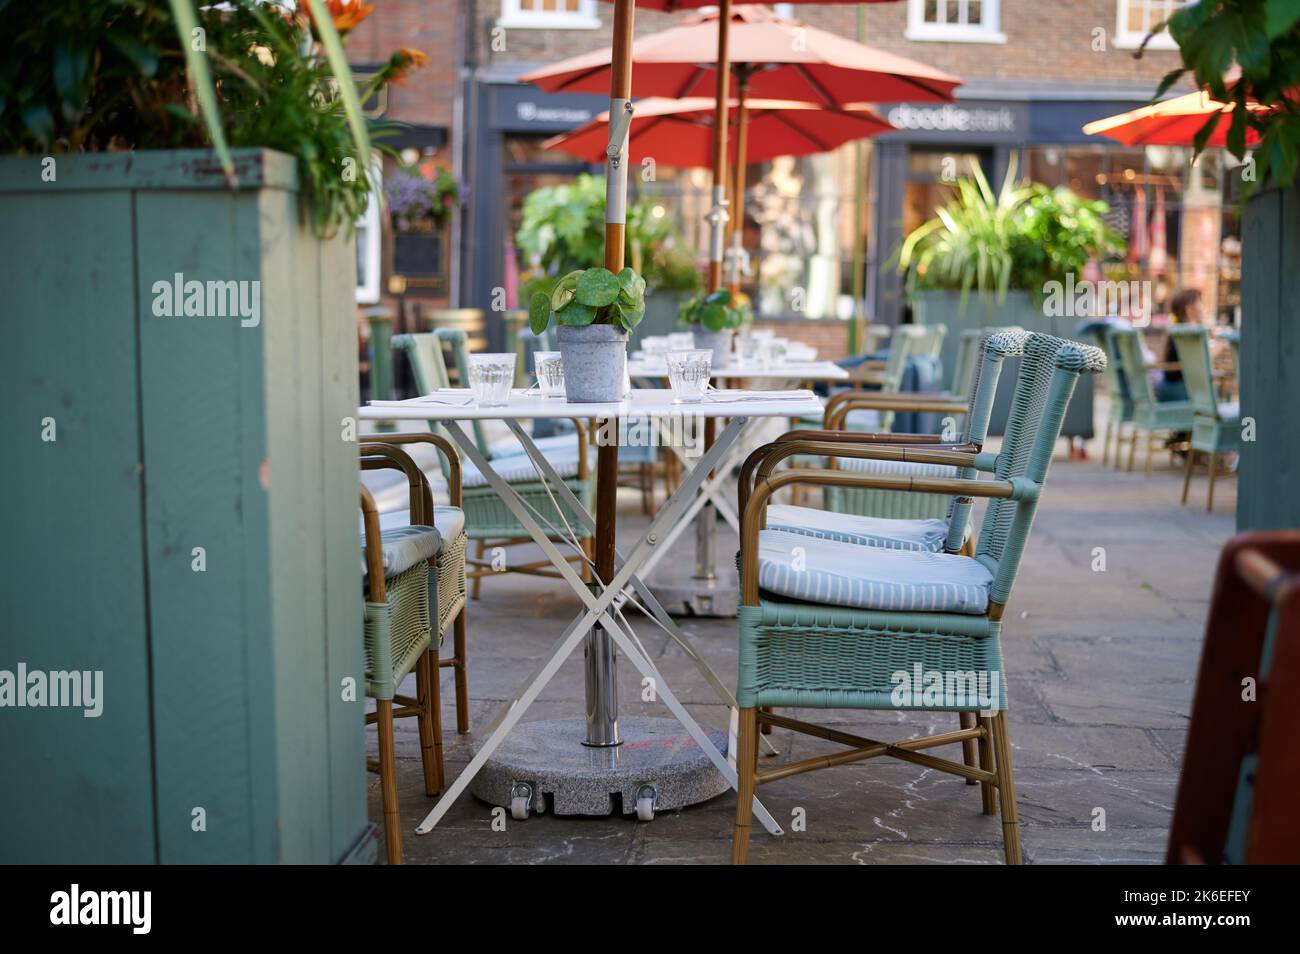 Leere Klapptische und großer Sonnenschirm / Sonnenschirm im Café mit Pflanzen, Glasküssen und Korbstühlen Stockfoto